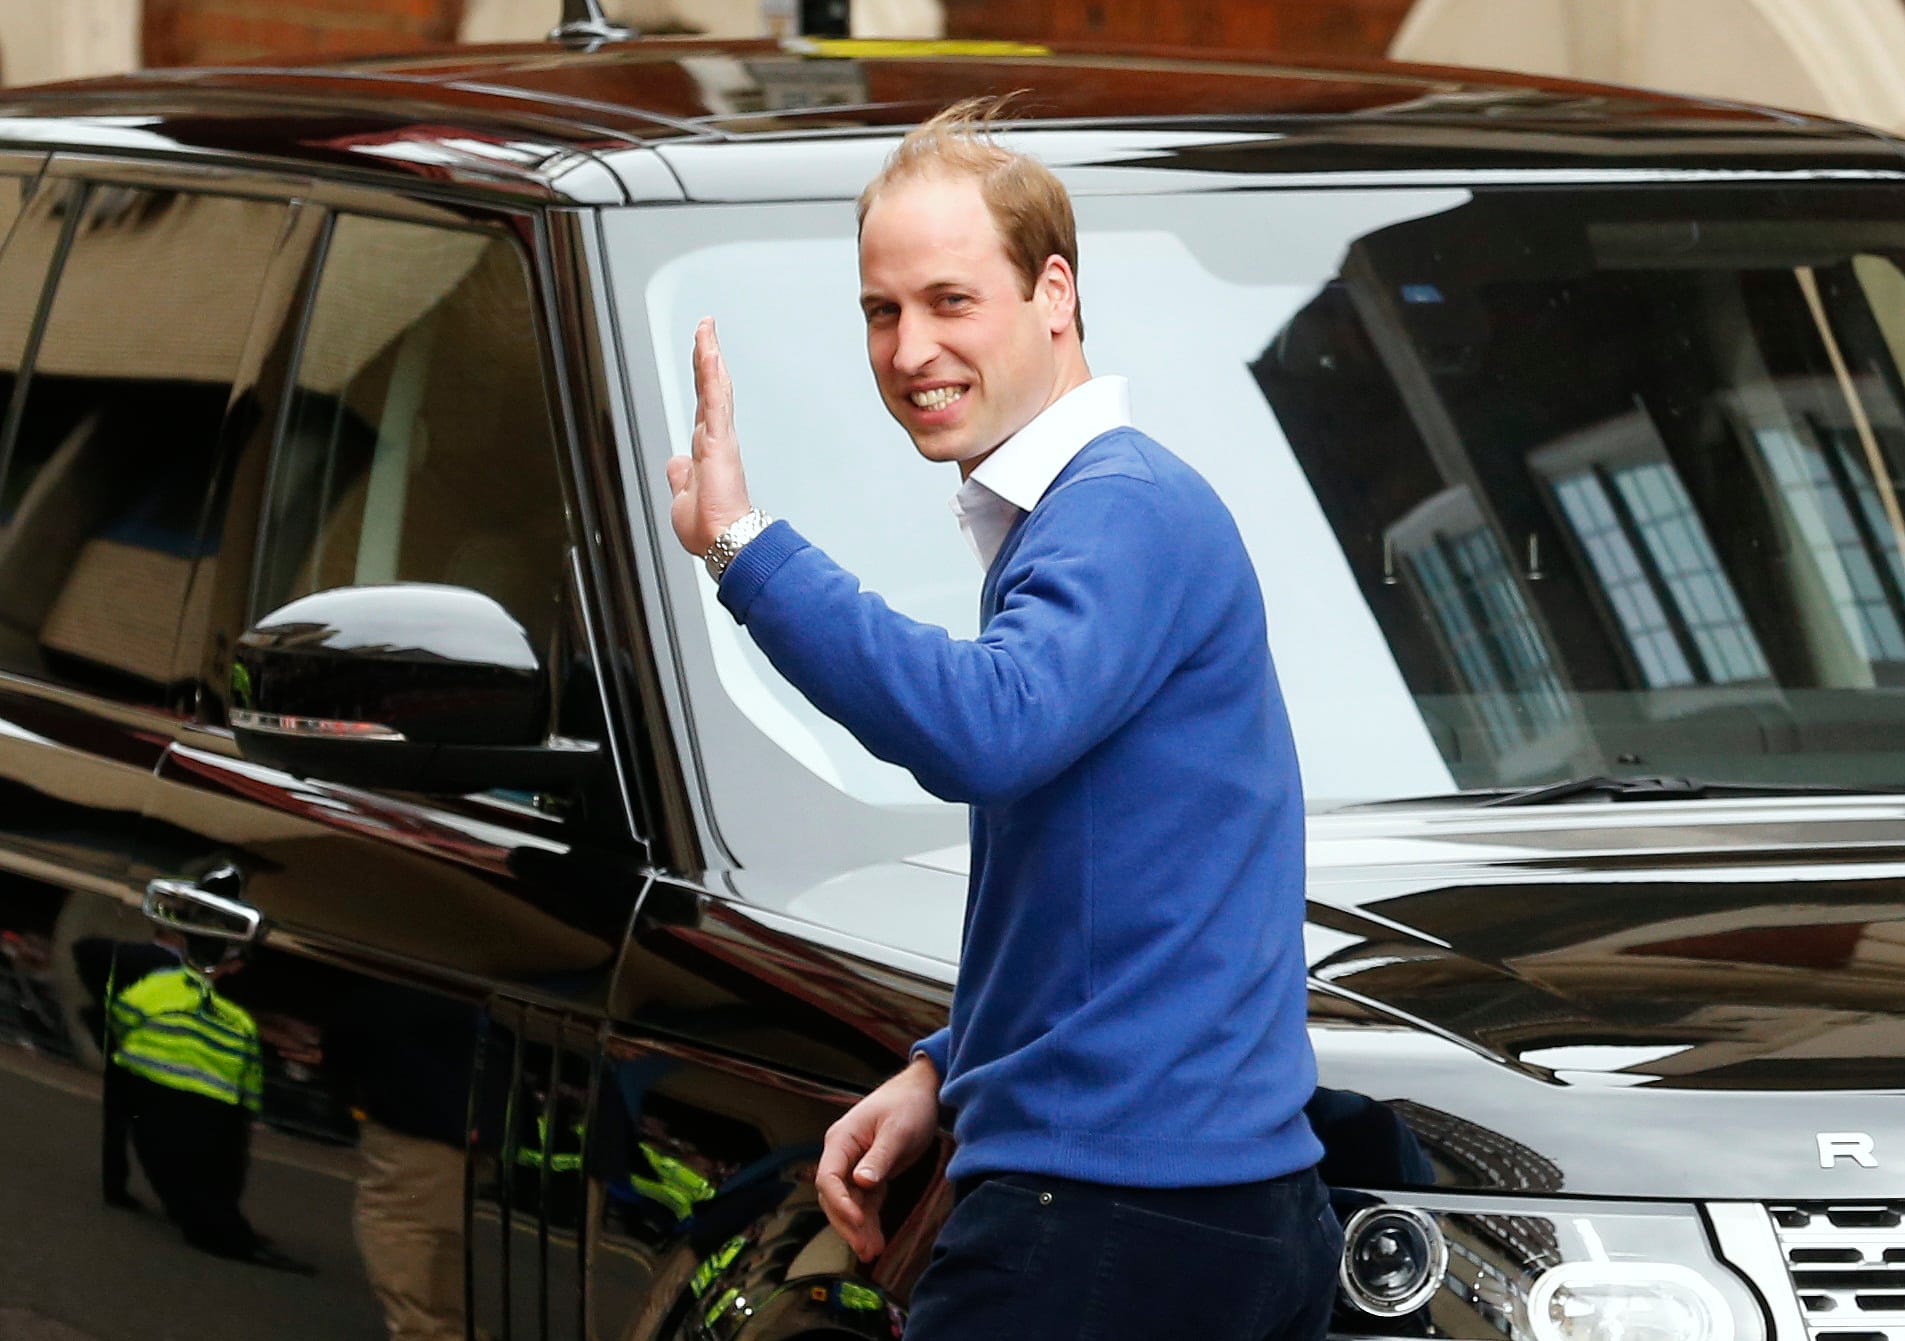 Der vielleicht prestigeträchtigste, öffentliche Auftritt des Gefährts: Im Juli 2013 fuhr Thronfolger Prinz William mit dem Oberklasse-SUV am "Lindo Wing" des Londoner St. Mary’s Hospital vor.